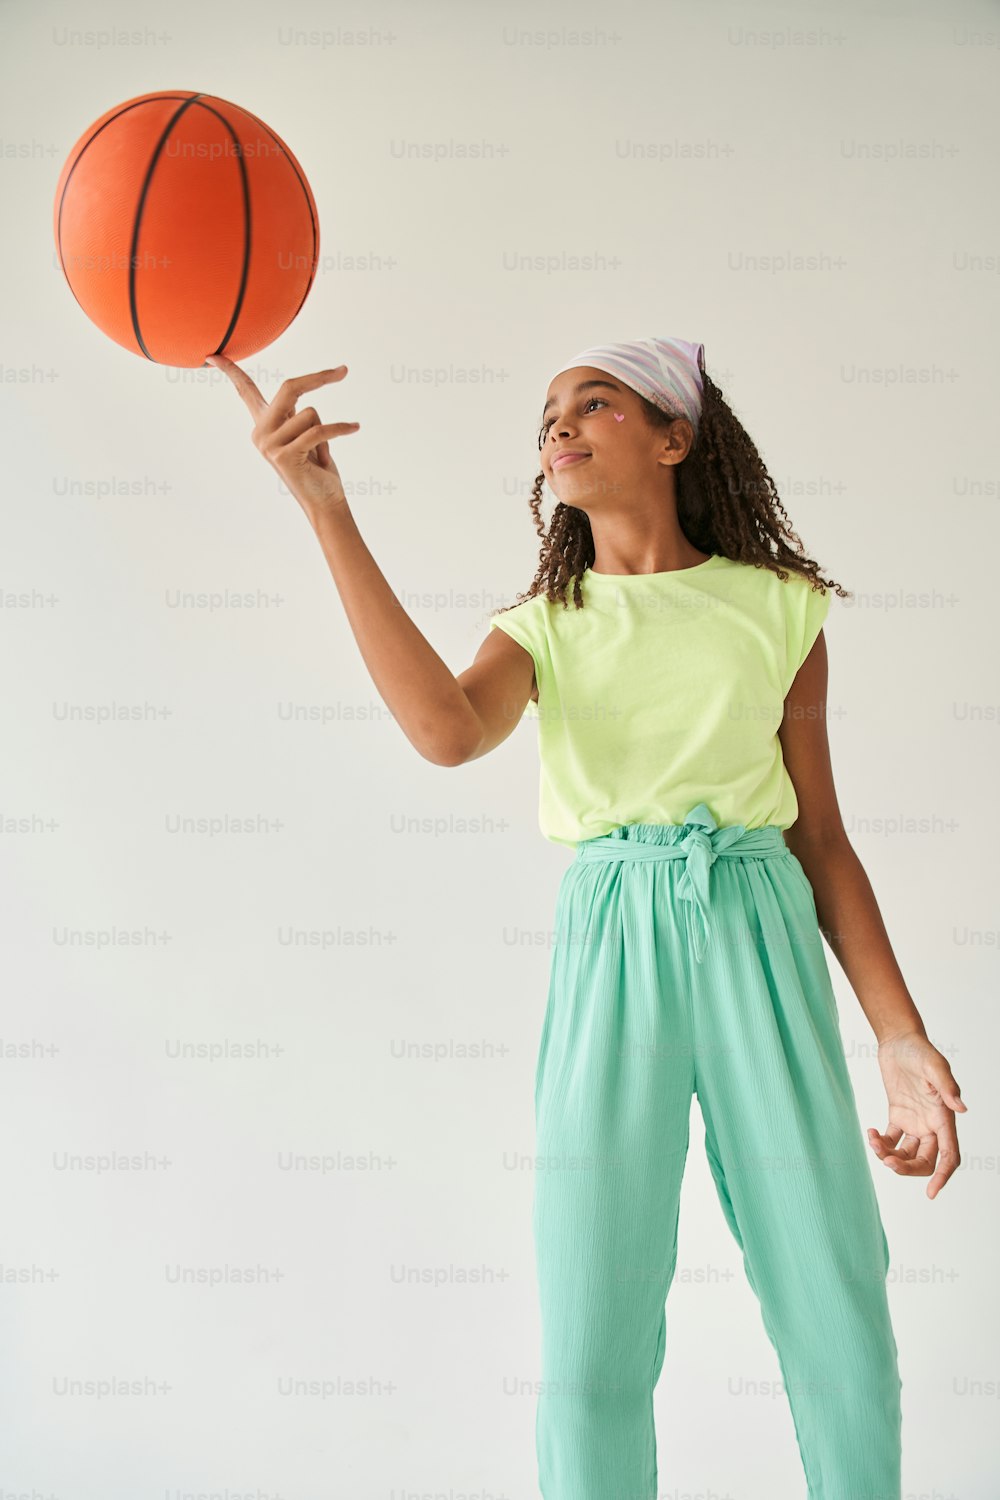 Bambina nera che gira la palla da basket sul suo dito. Studentessa bruna sorridente con adesivo a forma di cuore sul viso. Concetto di infanzia. Isolato su sfondo grigio. Riprese in studio. Spazio di copia